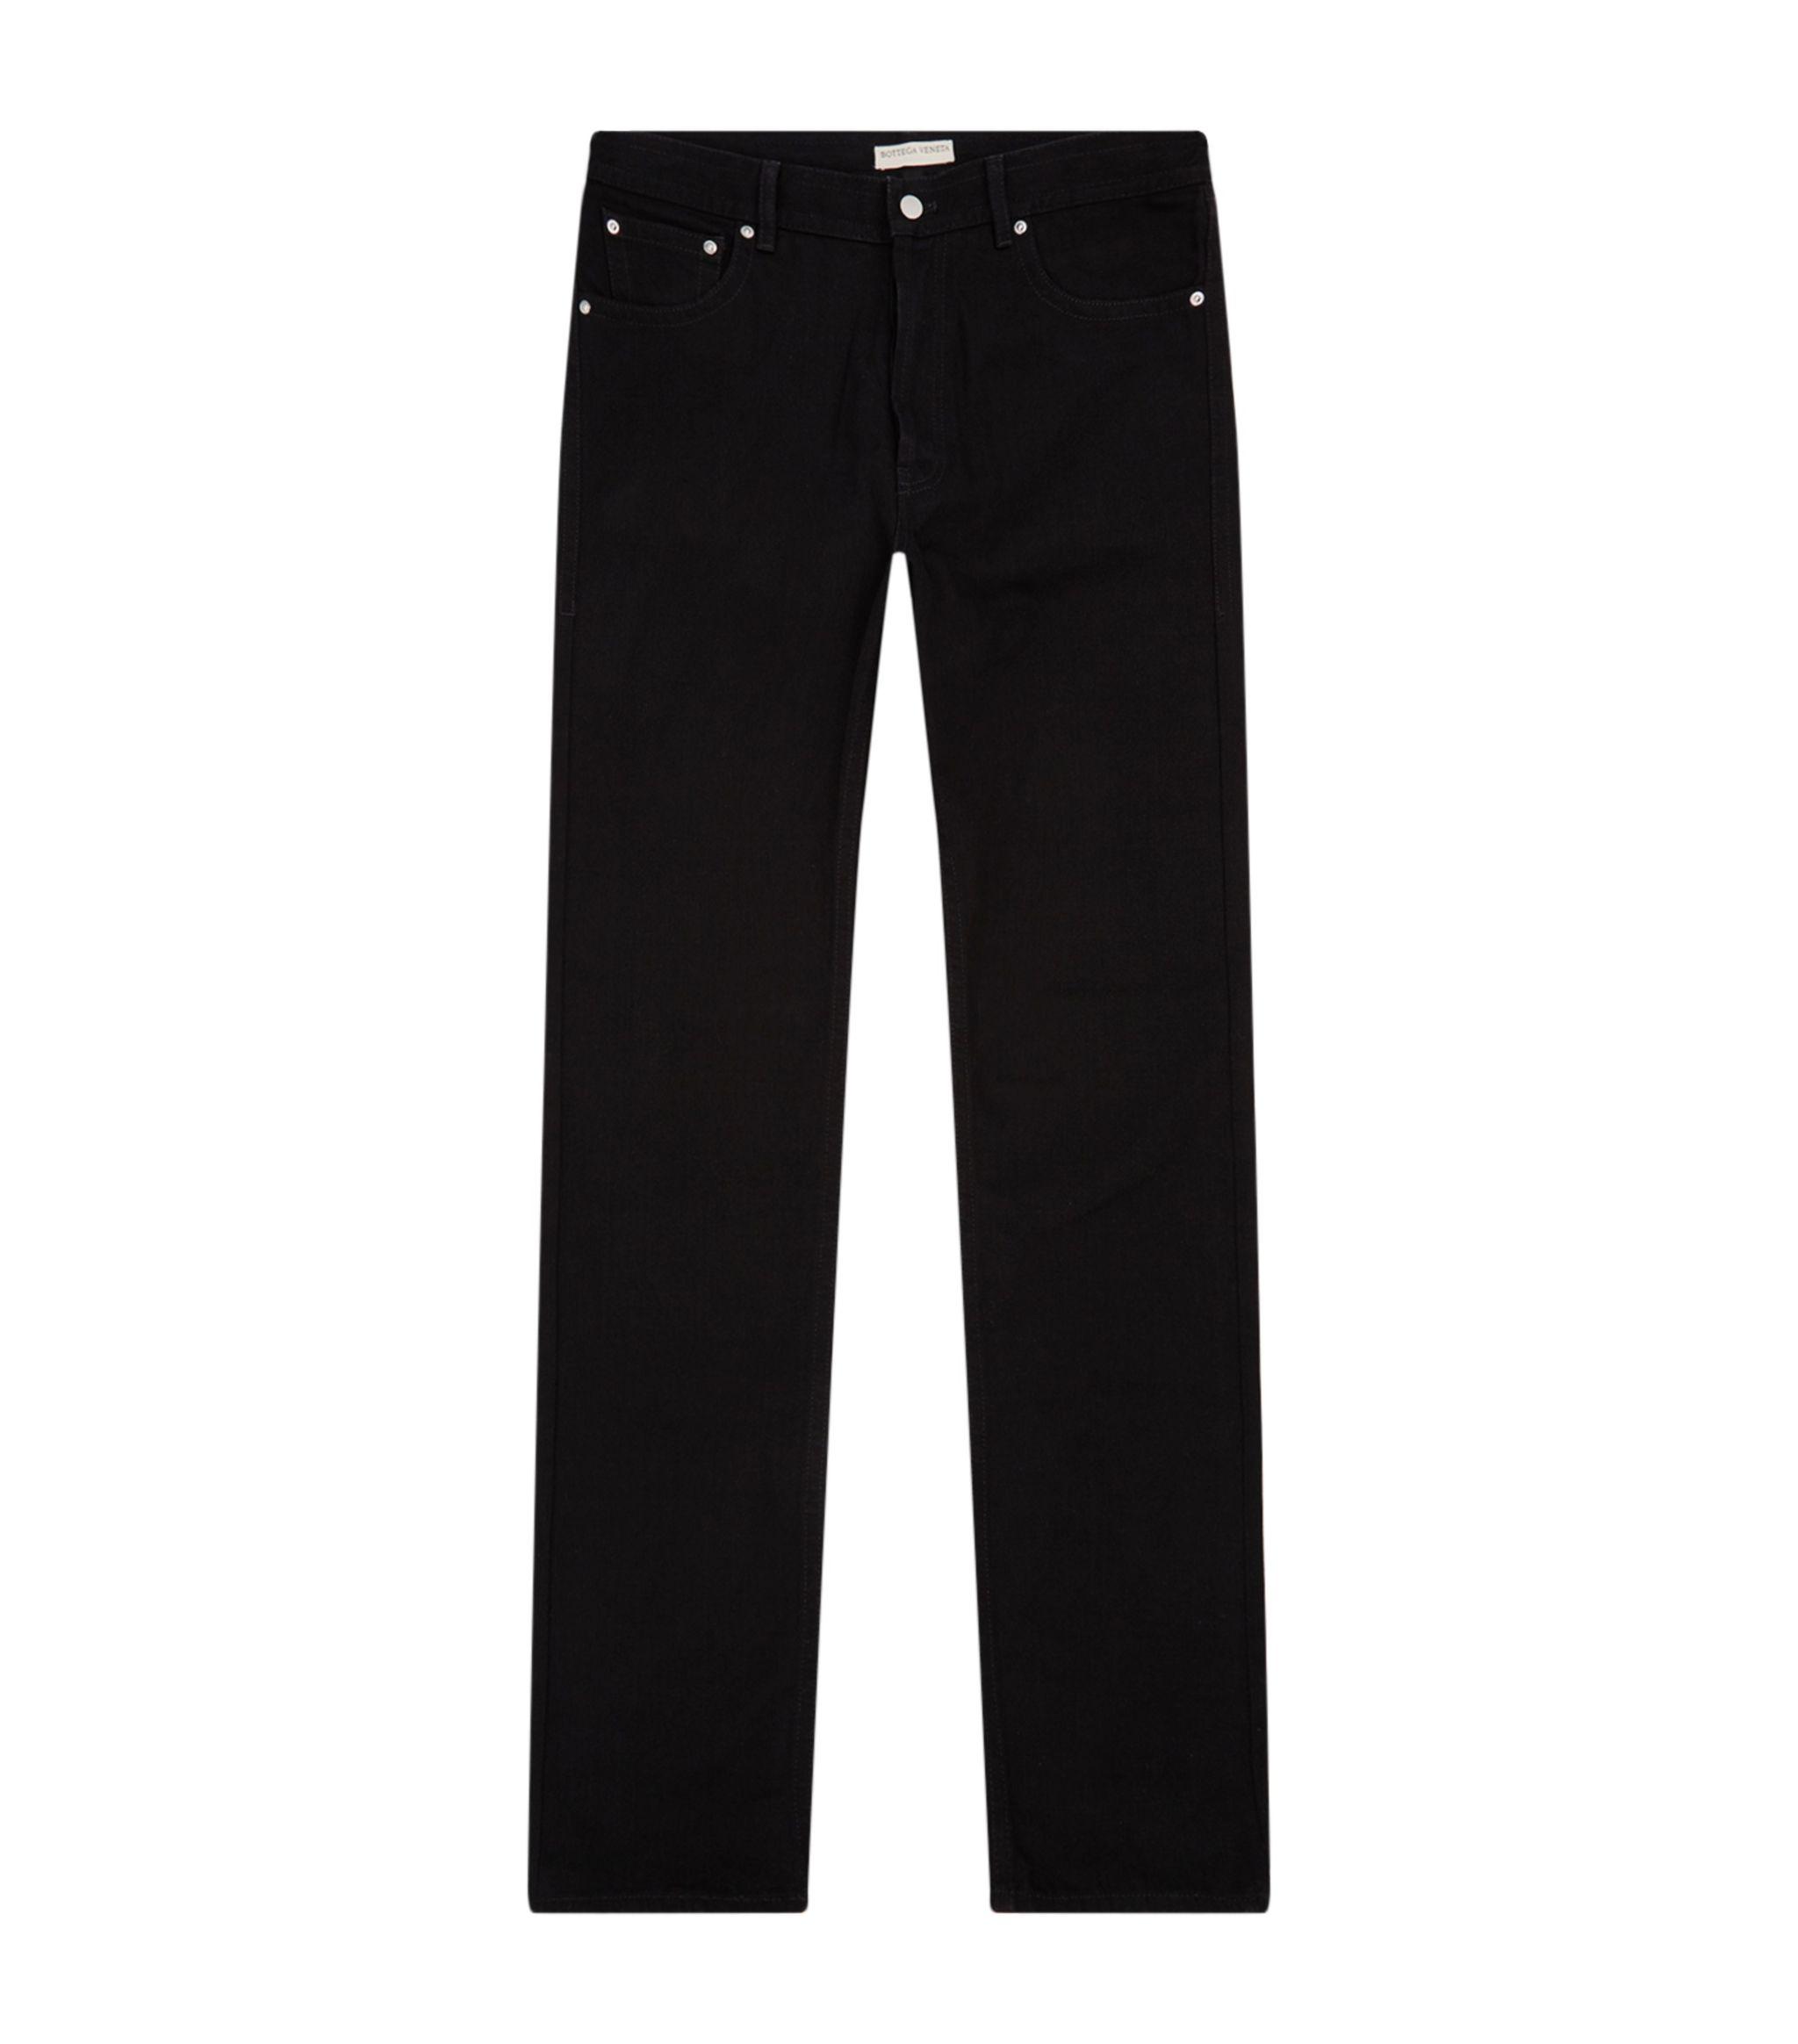 Bottega Veneta Denim Straight-leg Jeans in Black for Men - Lyst